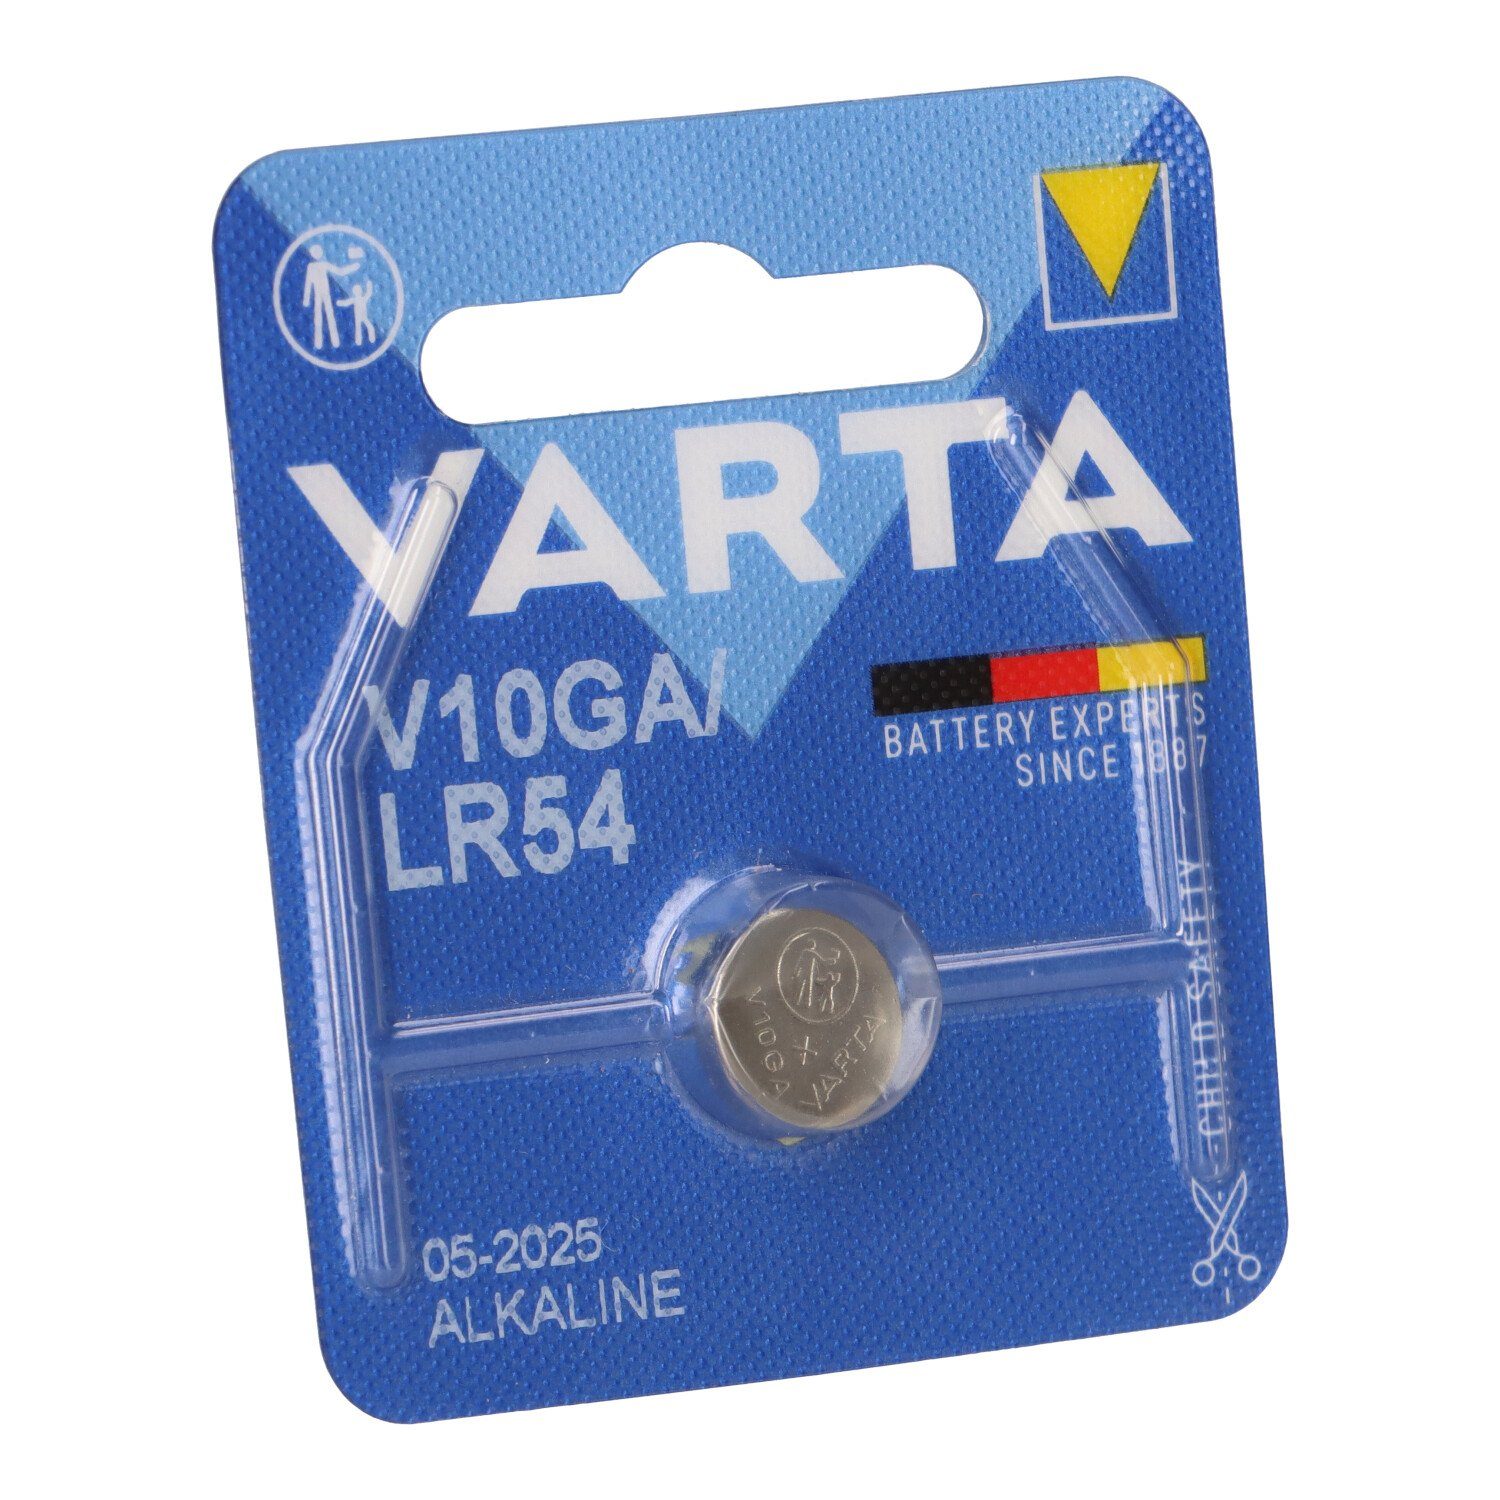 VARTA Varta Knopfzelle Electronics V 10 GA Alkaline 1,5 V 1er Blister Knopfzelle